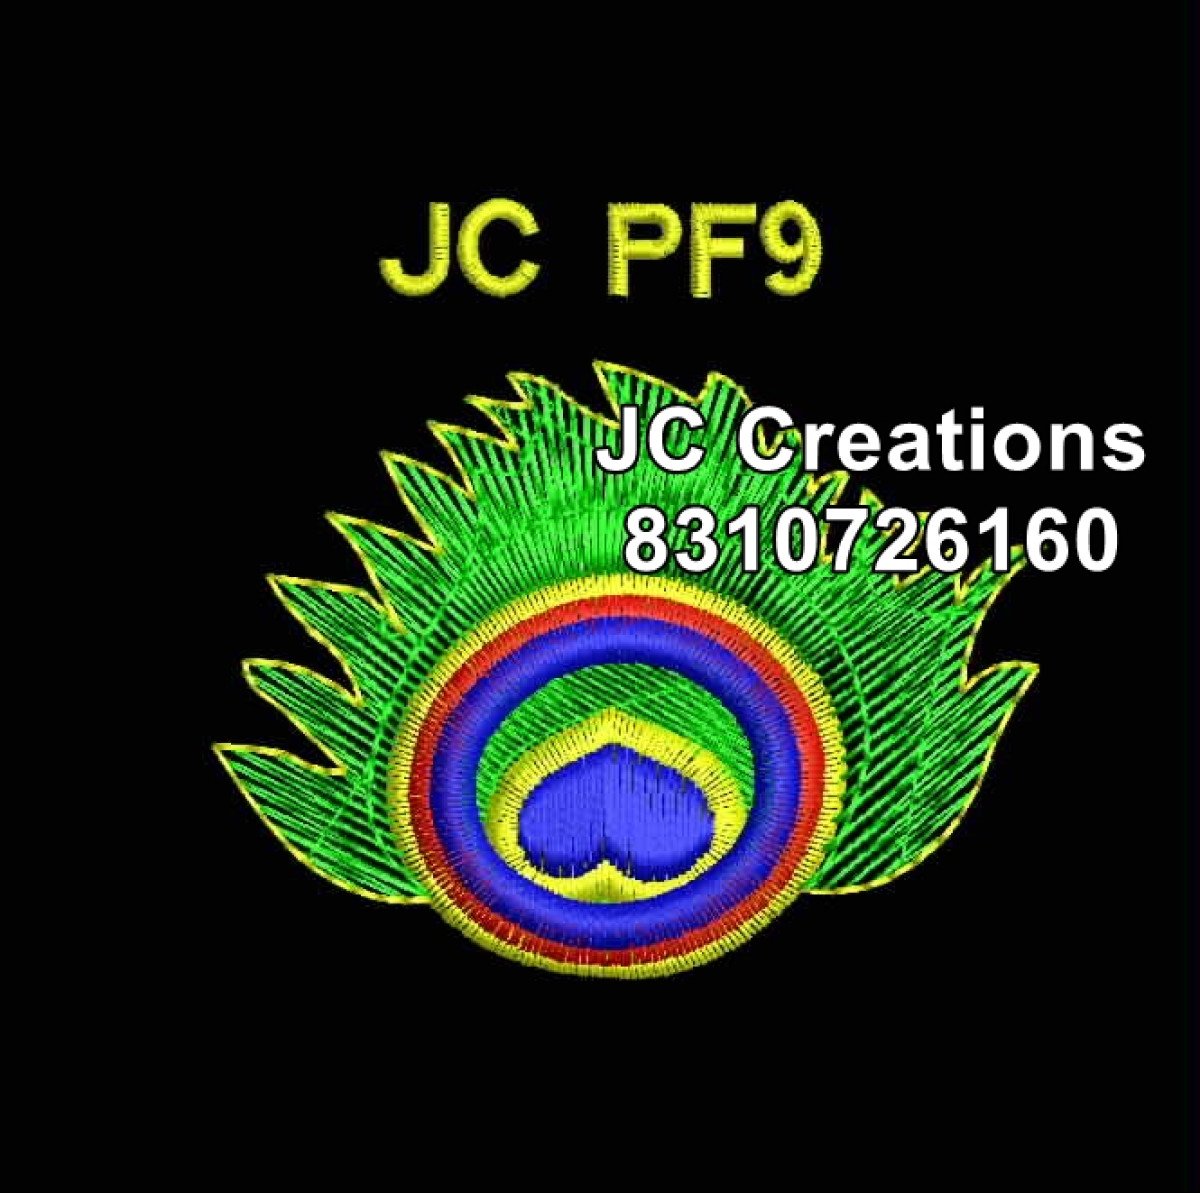 JCPF9